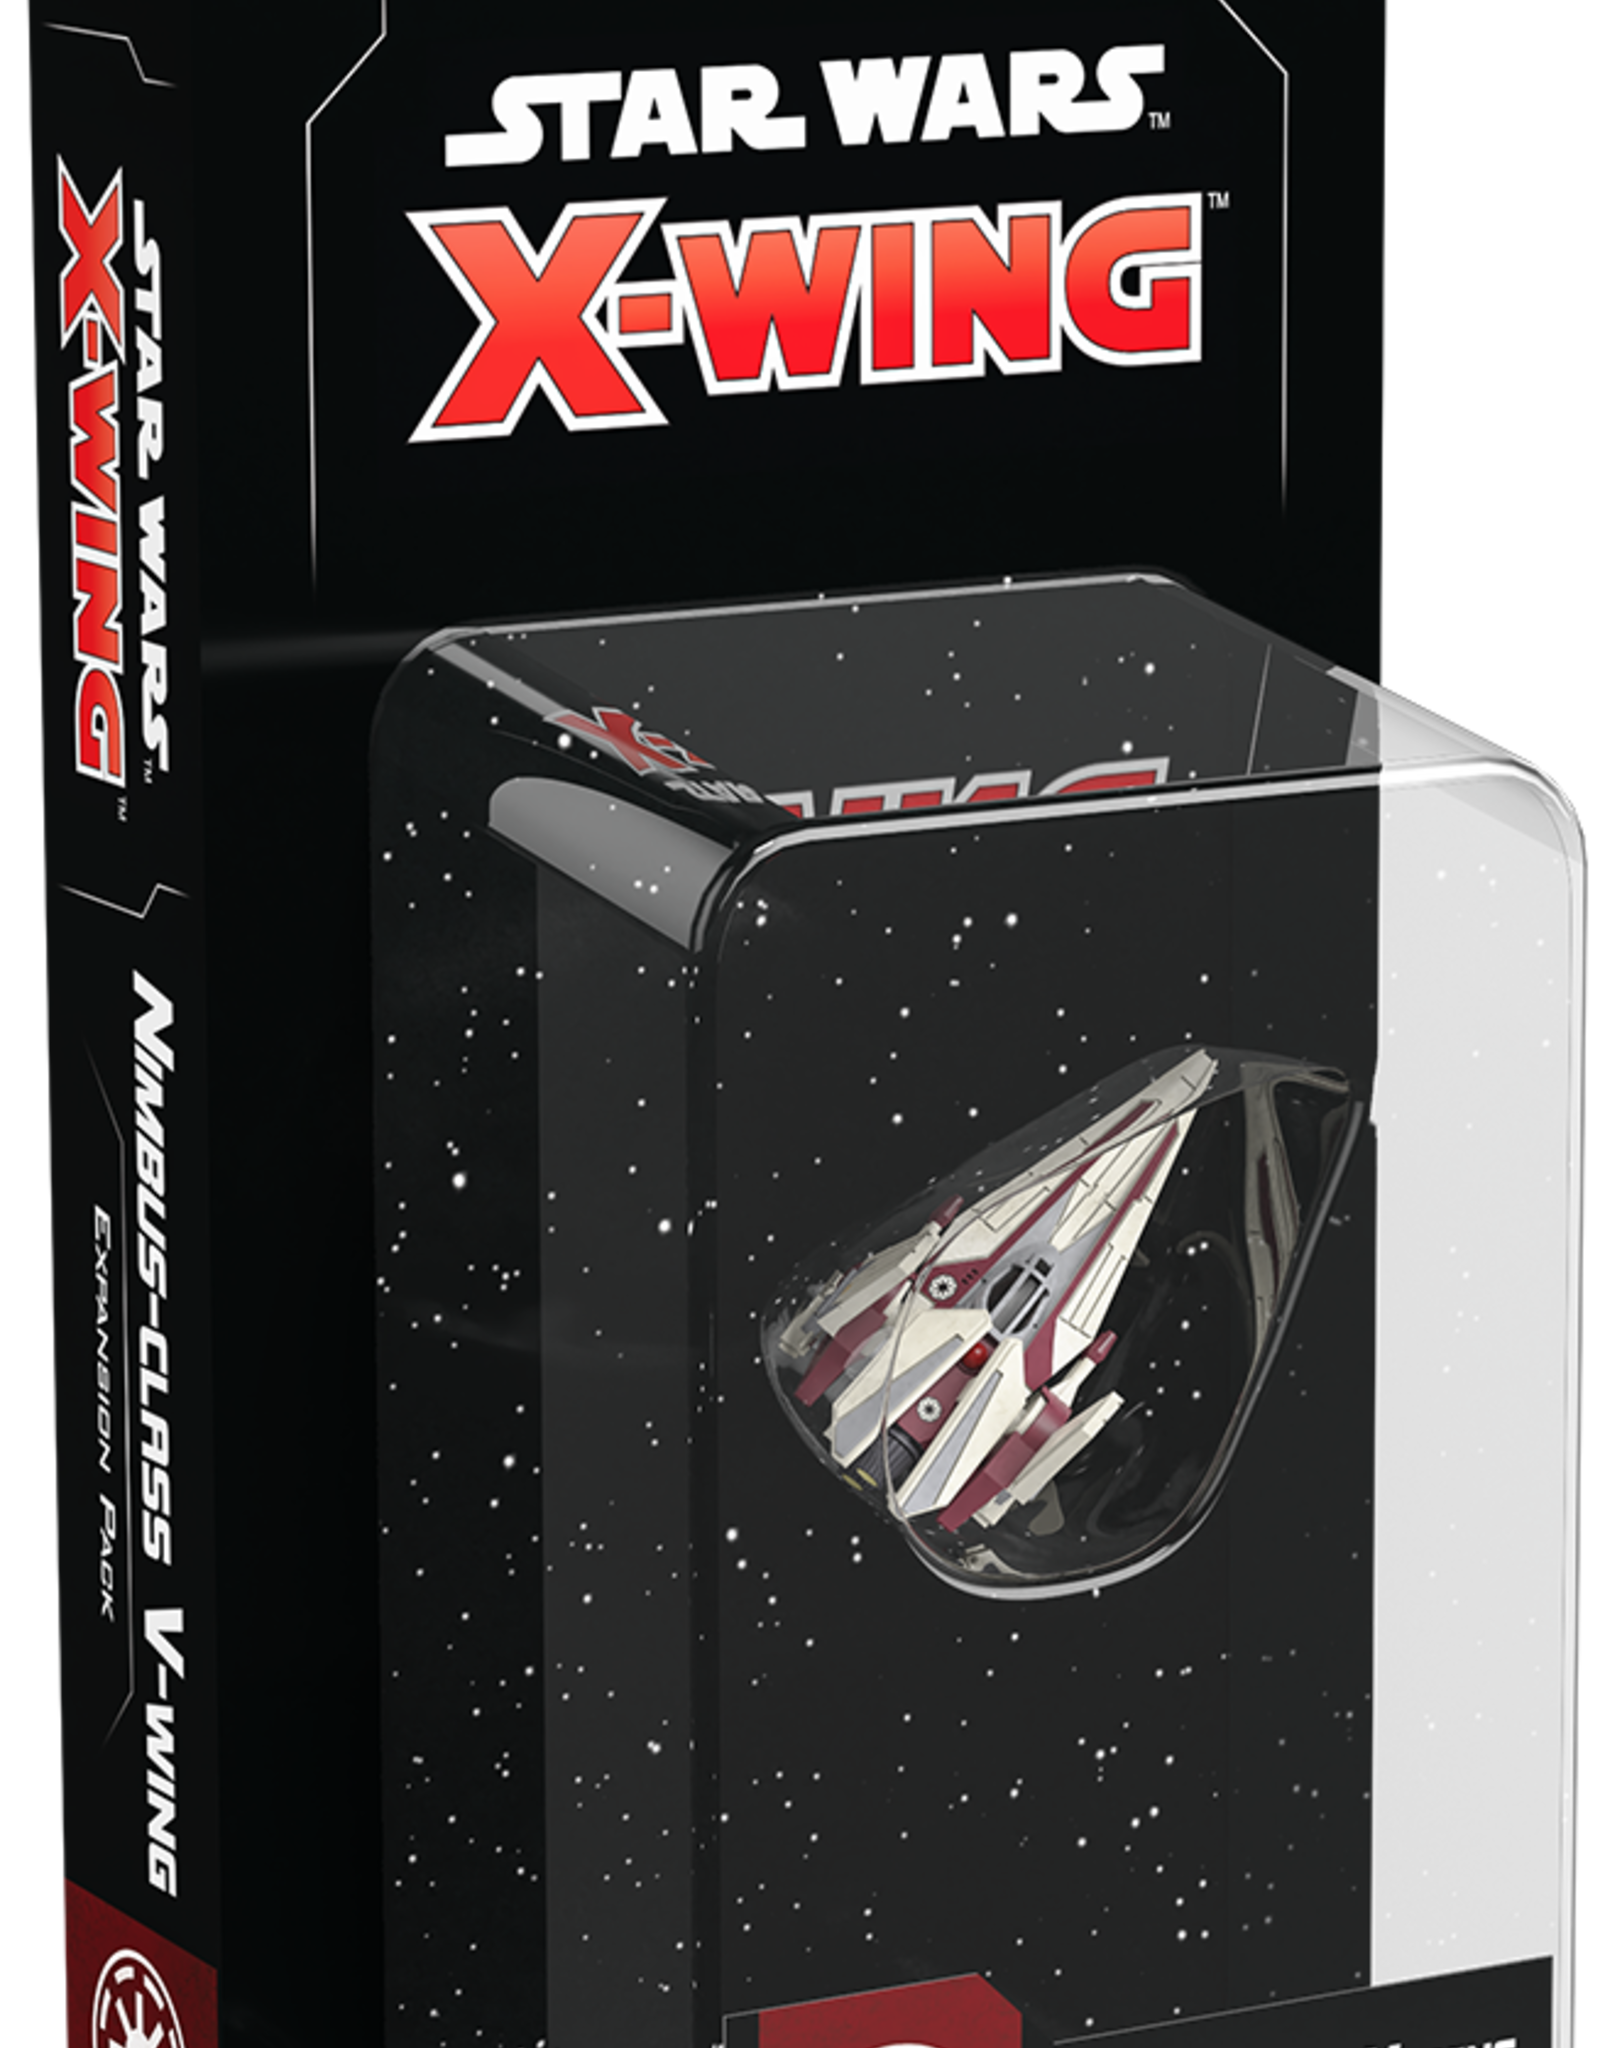 FFG X-Wing 2.0 Nimbus-class V-Wing